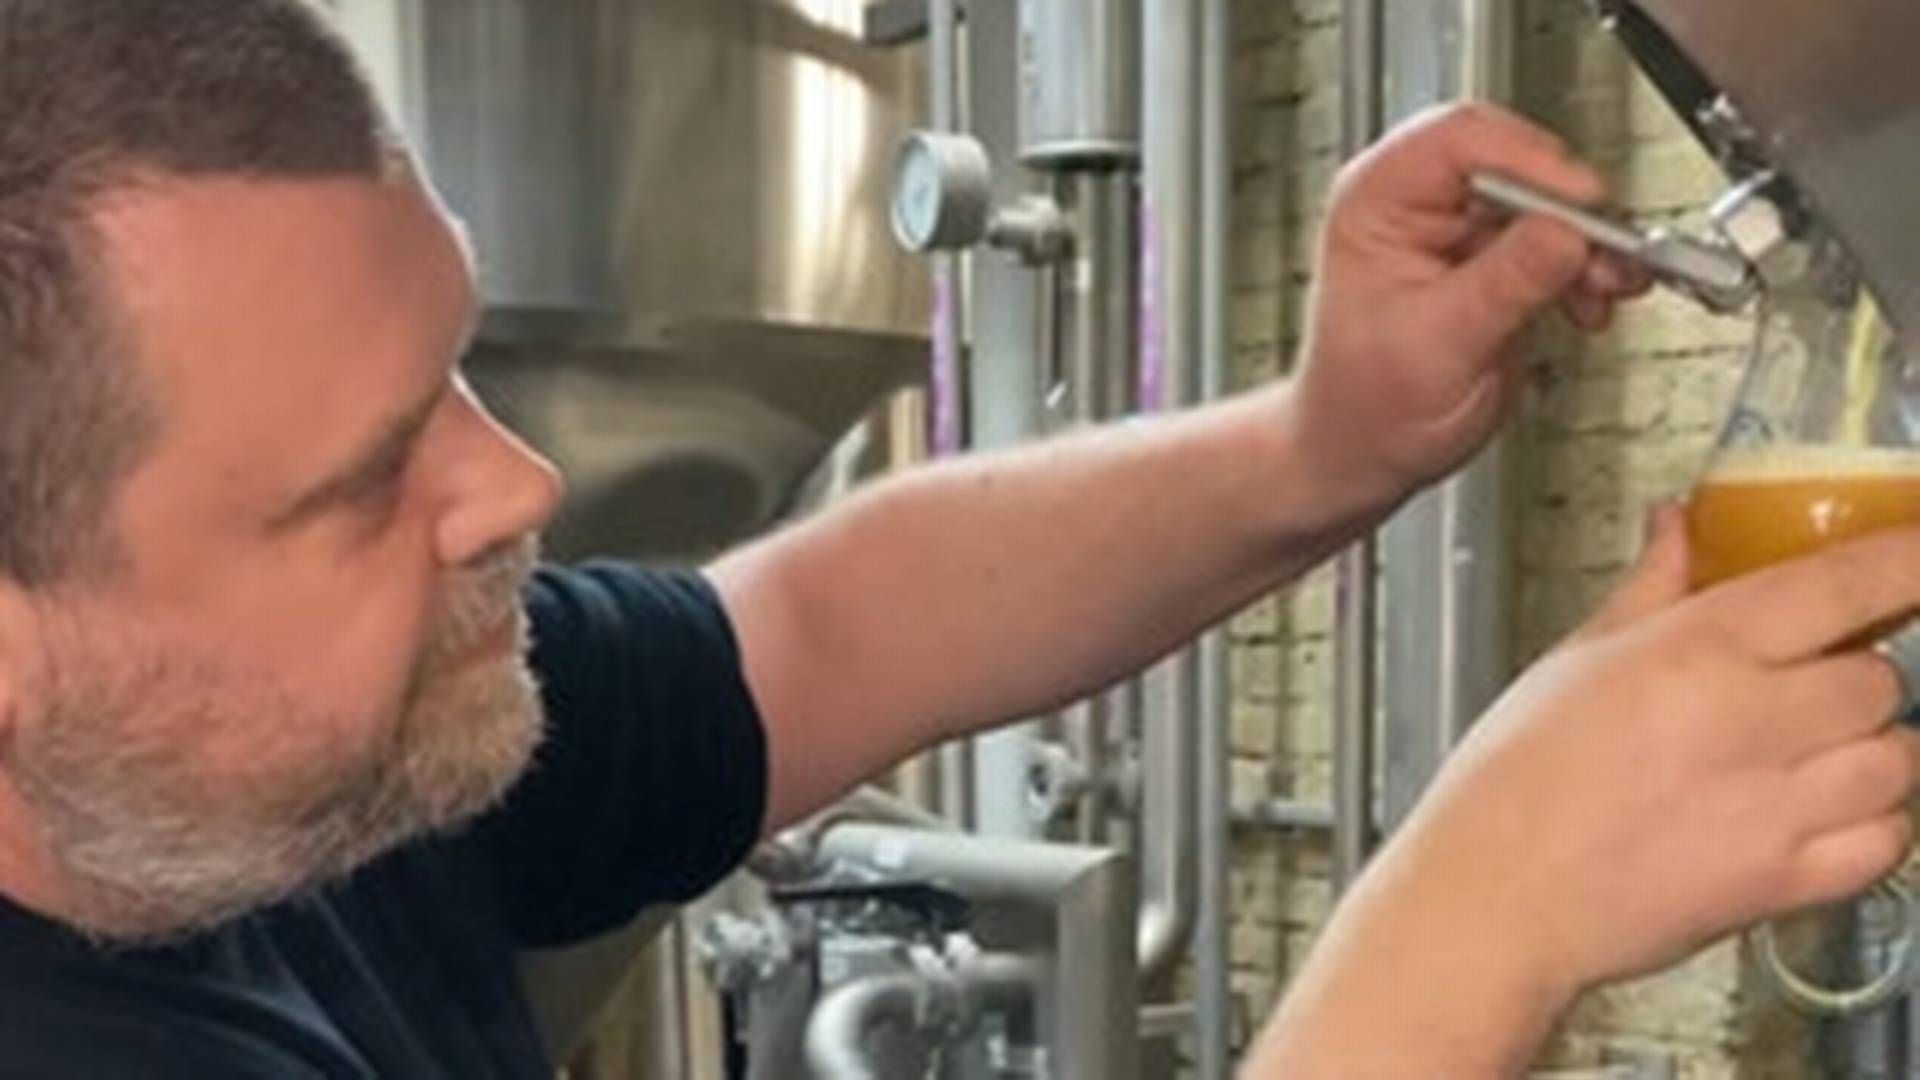 Brygmester Chris Thurgeson tester den nye Roskilde-øl, der er brygget i samarbejde med Frankly Juice. | Foto: Pr/ Carlsberg Danmark